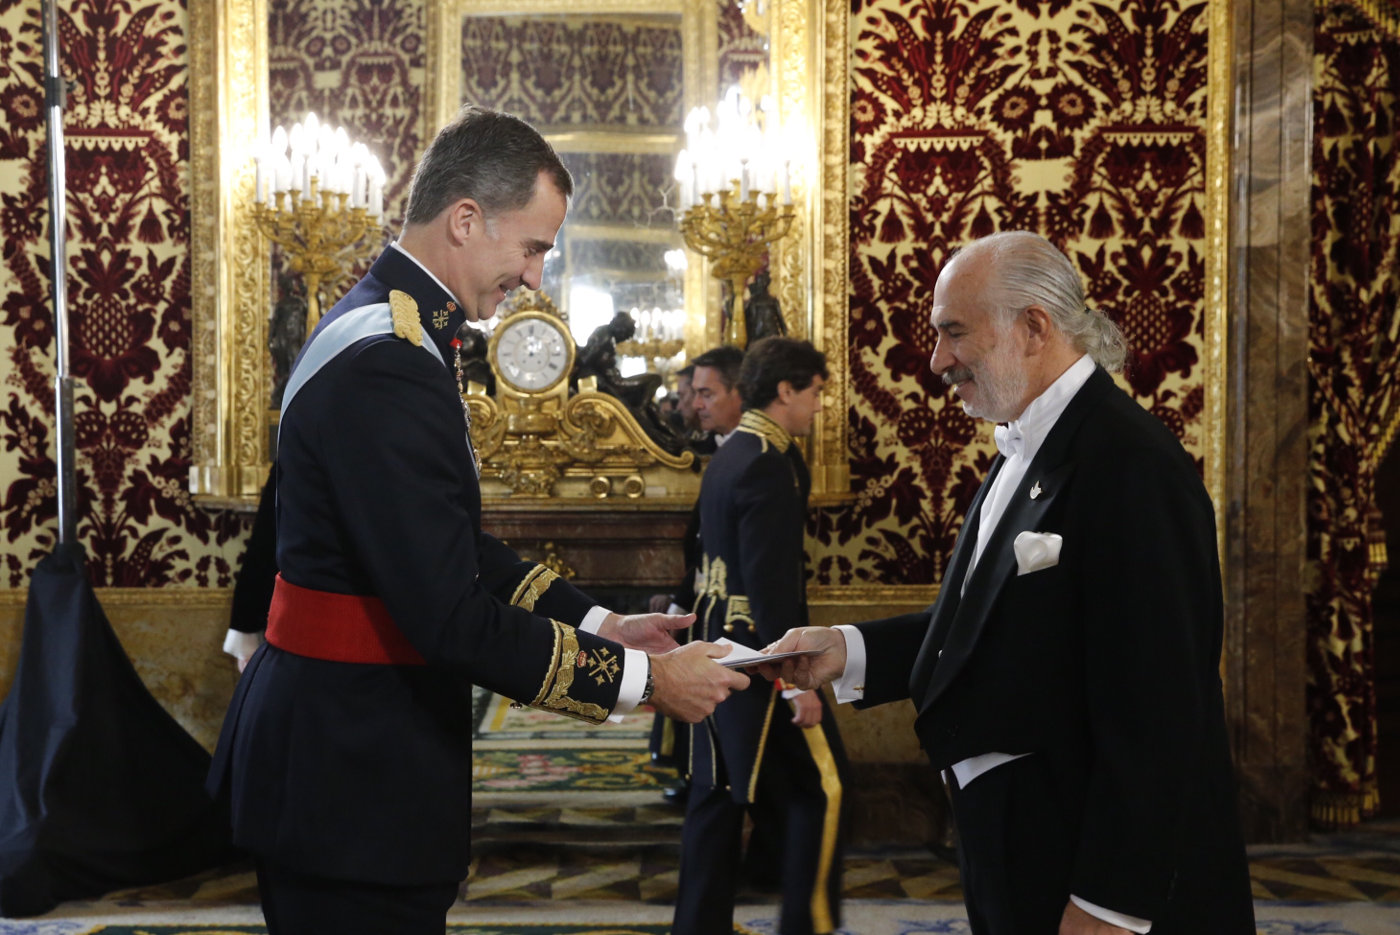  Embajador de Colombia en España entregó copias de Cartas Credenciales a Su Majestad el Rey Don Felipe VI